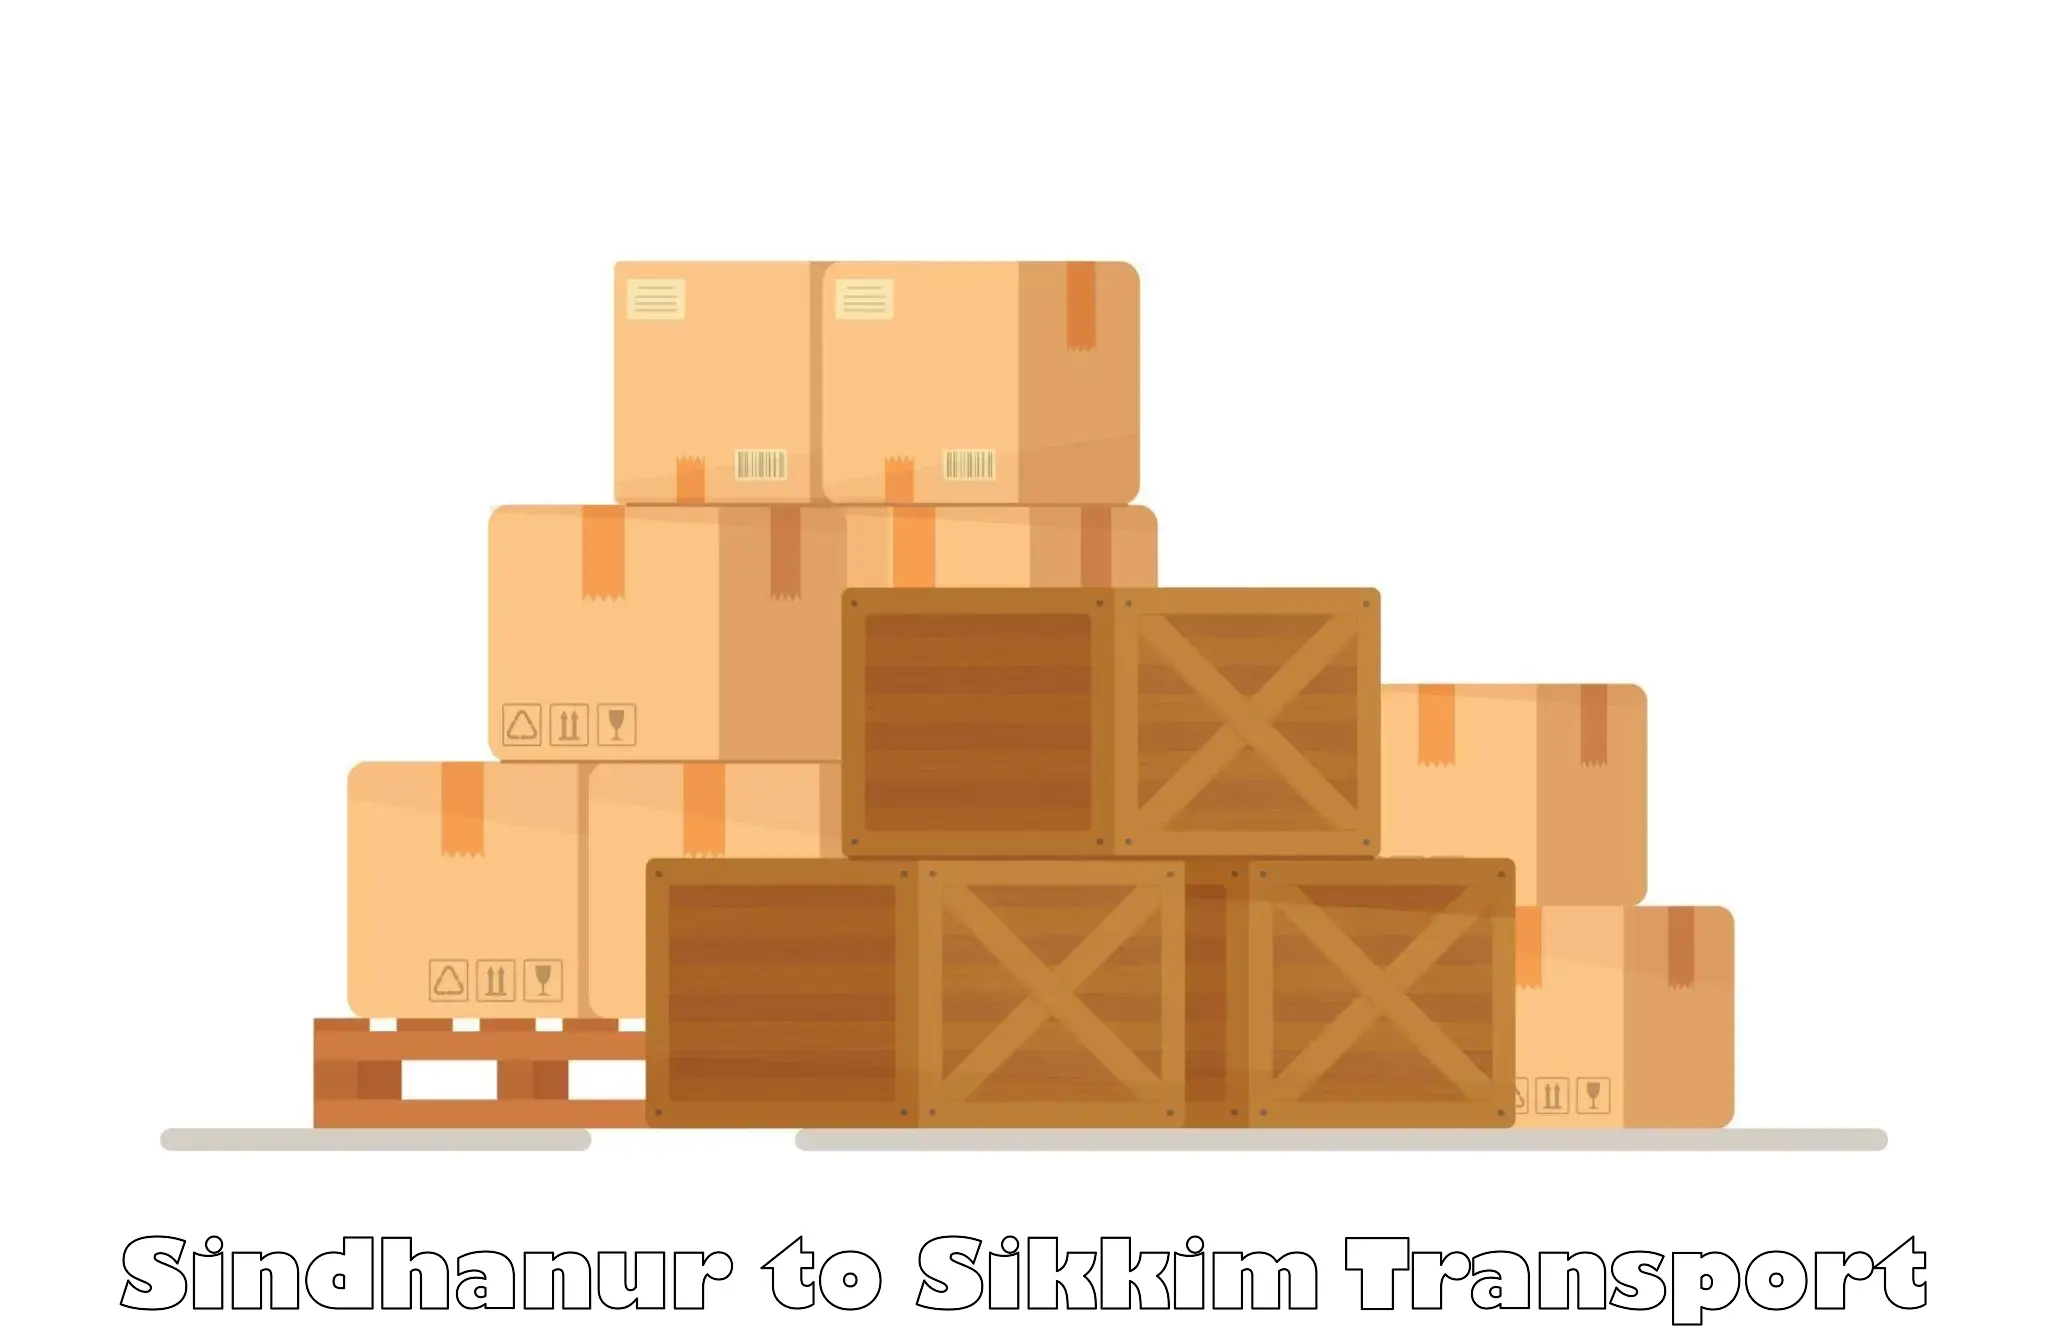 Transport in sharing Sindhanur to Namchi